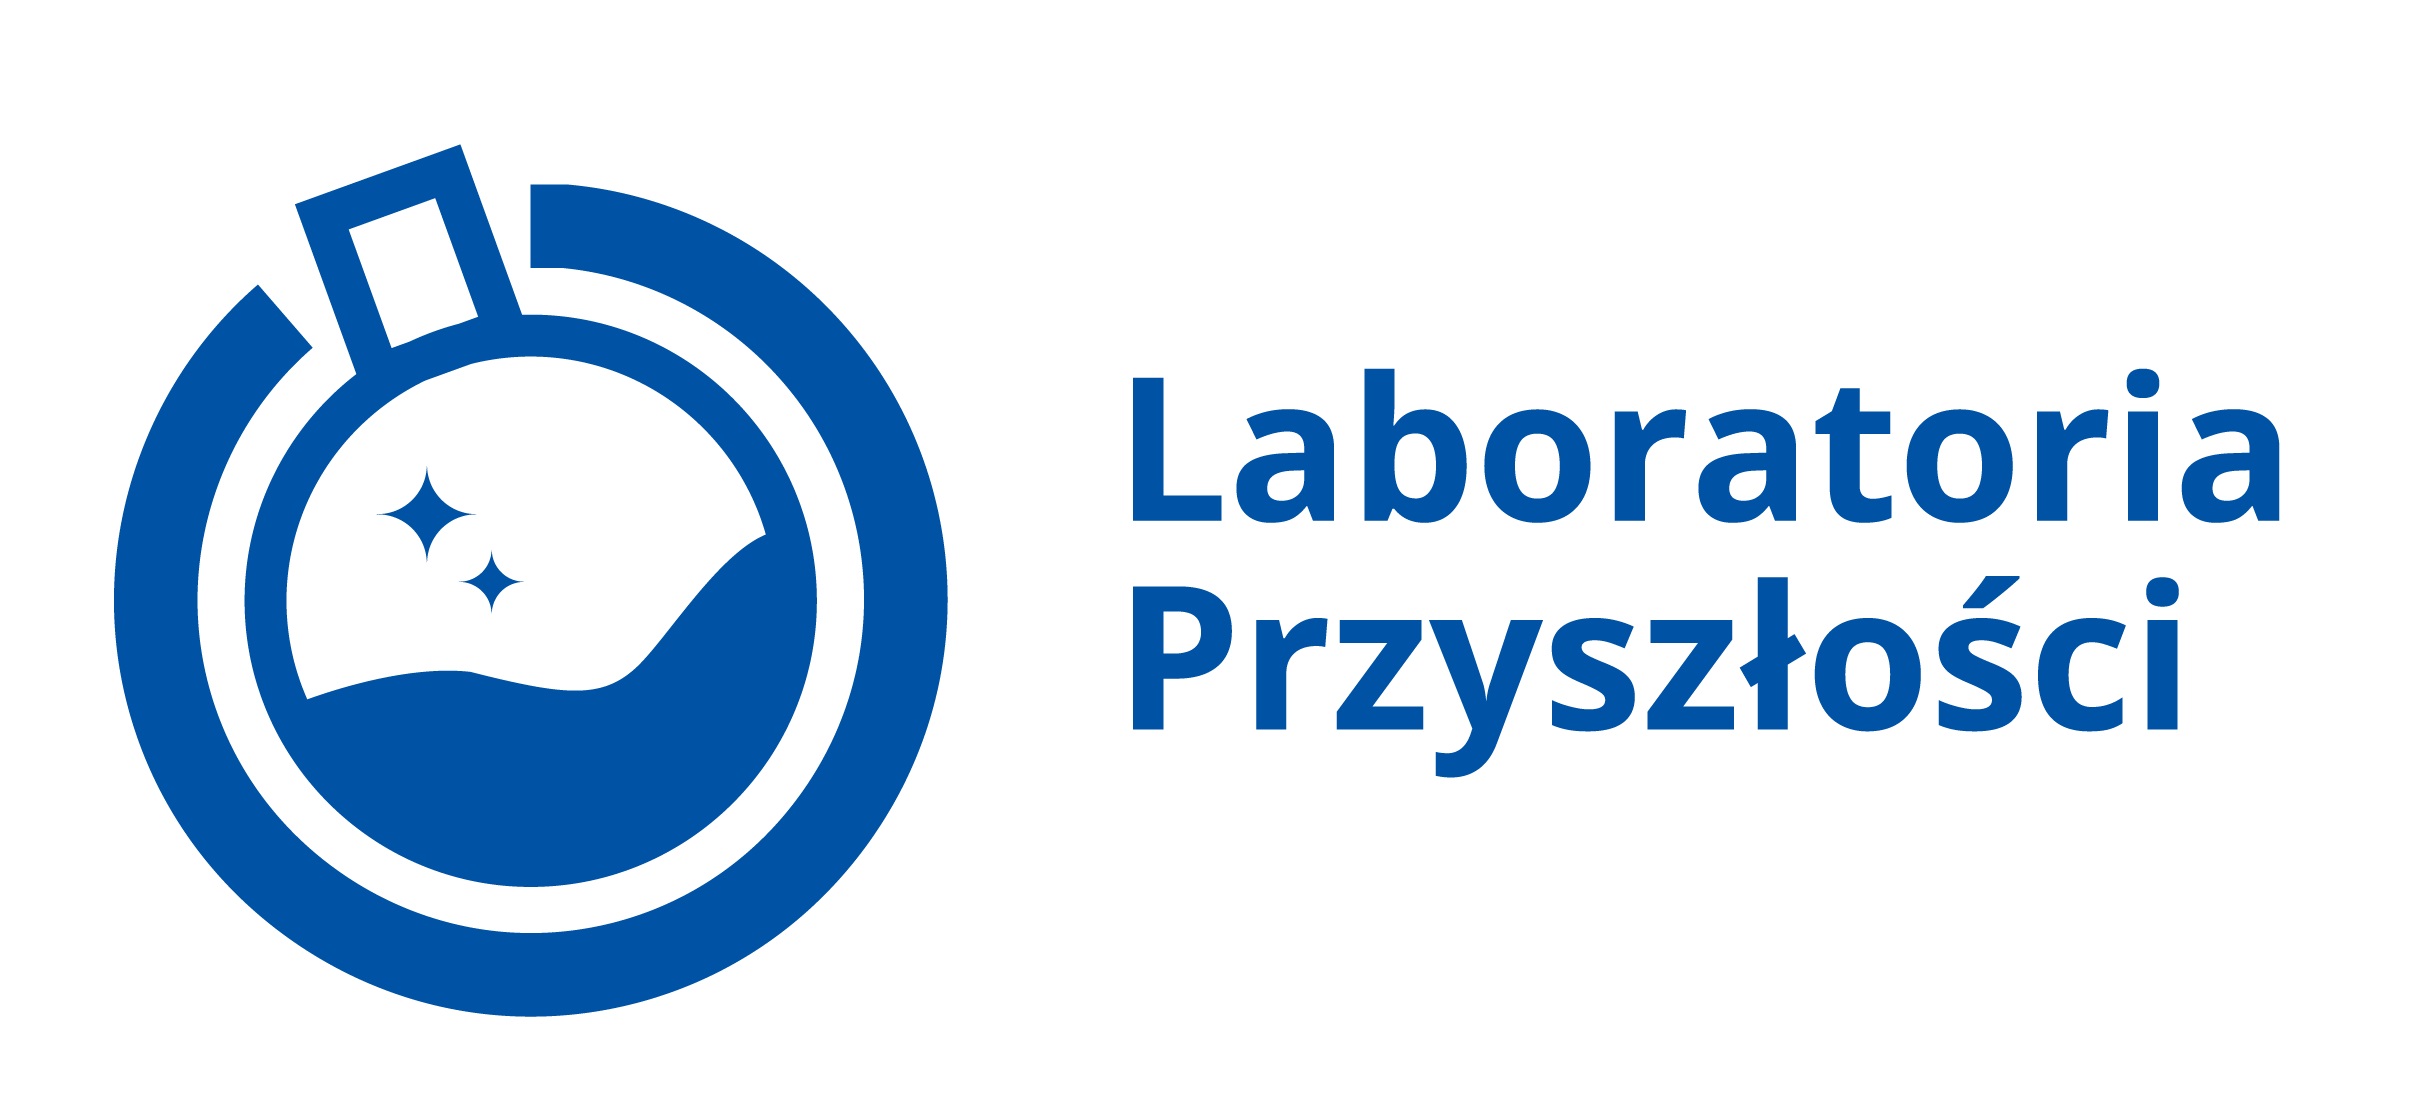 http://zso18.krakow.pl/sp19/laboratorium-przyszlosci-w-sp19/